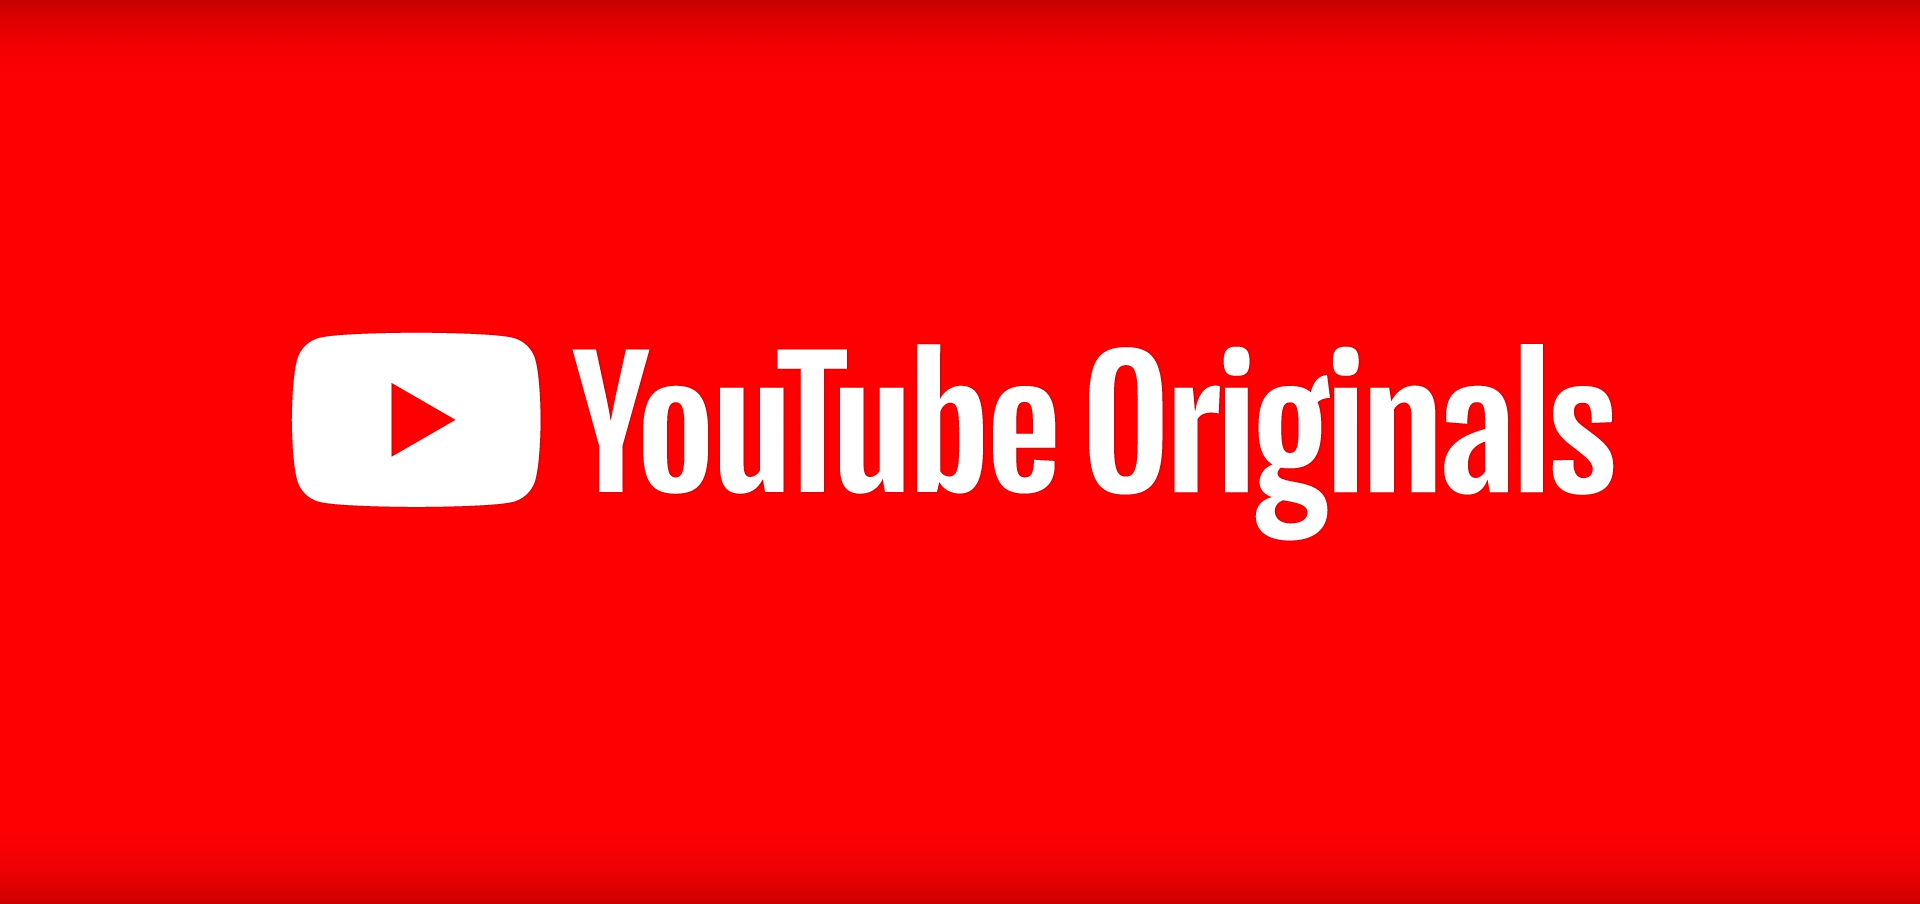 YouTube Original Logo - Logo of YouTube Originals.png